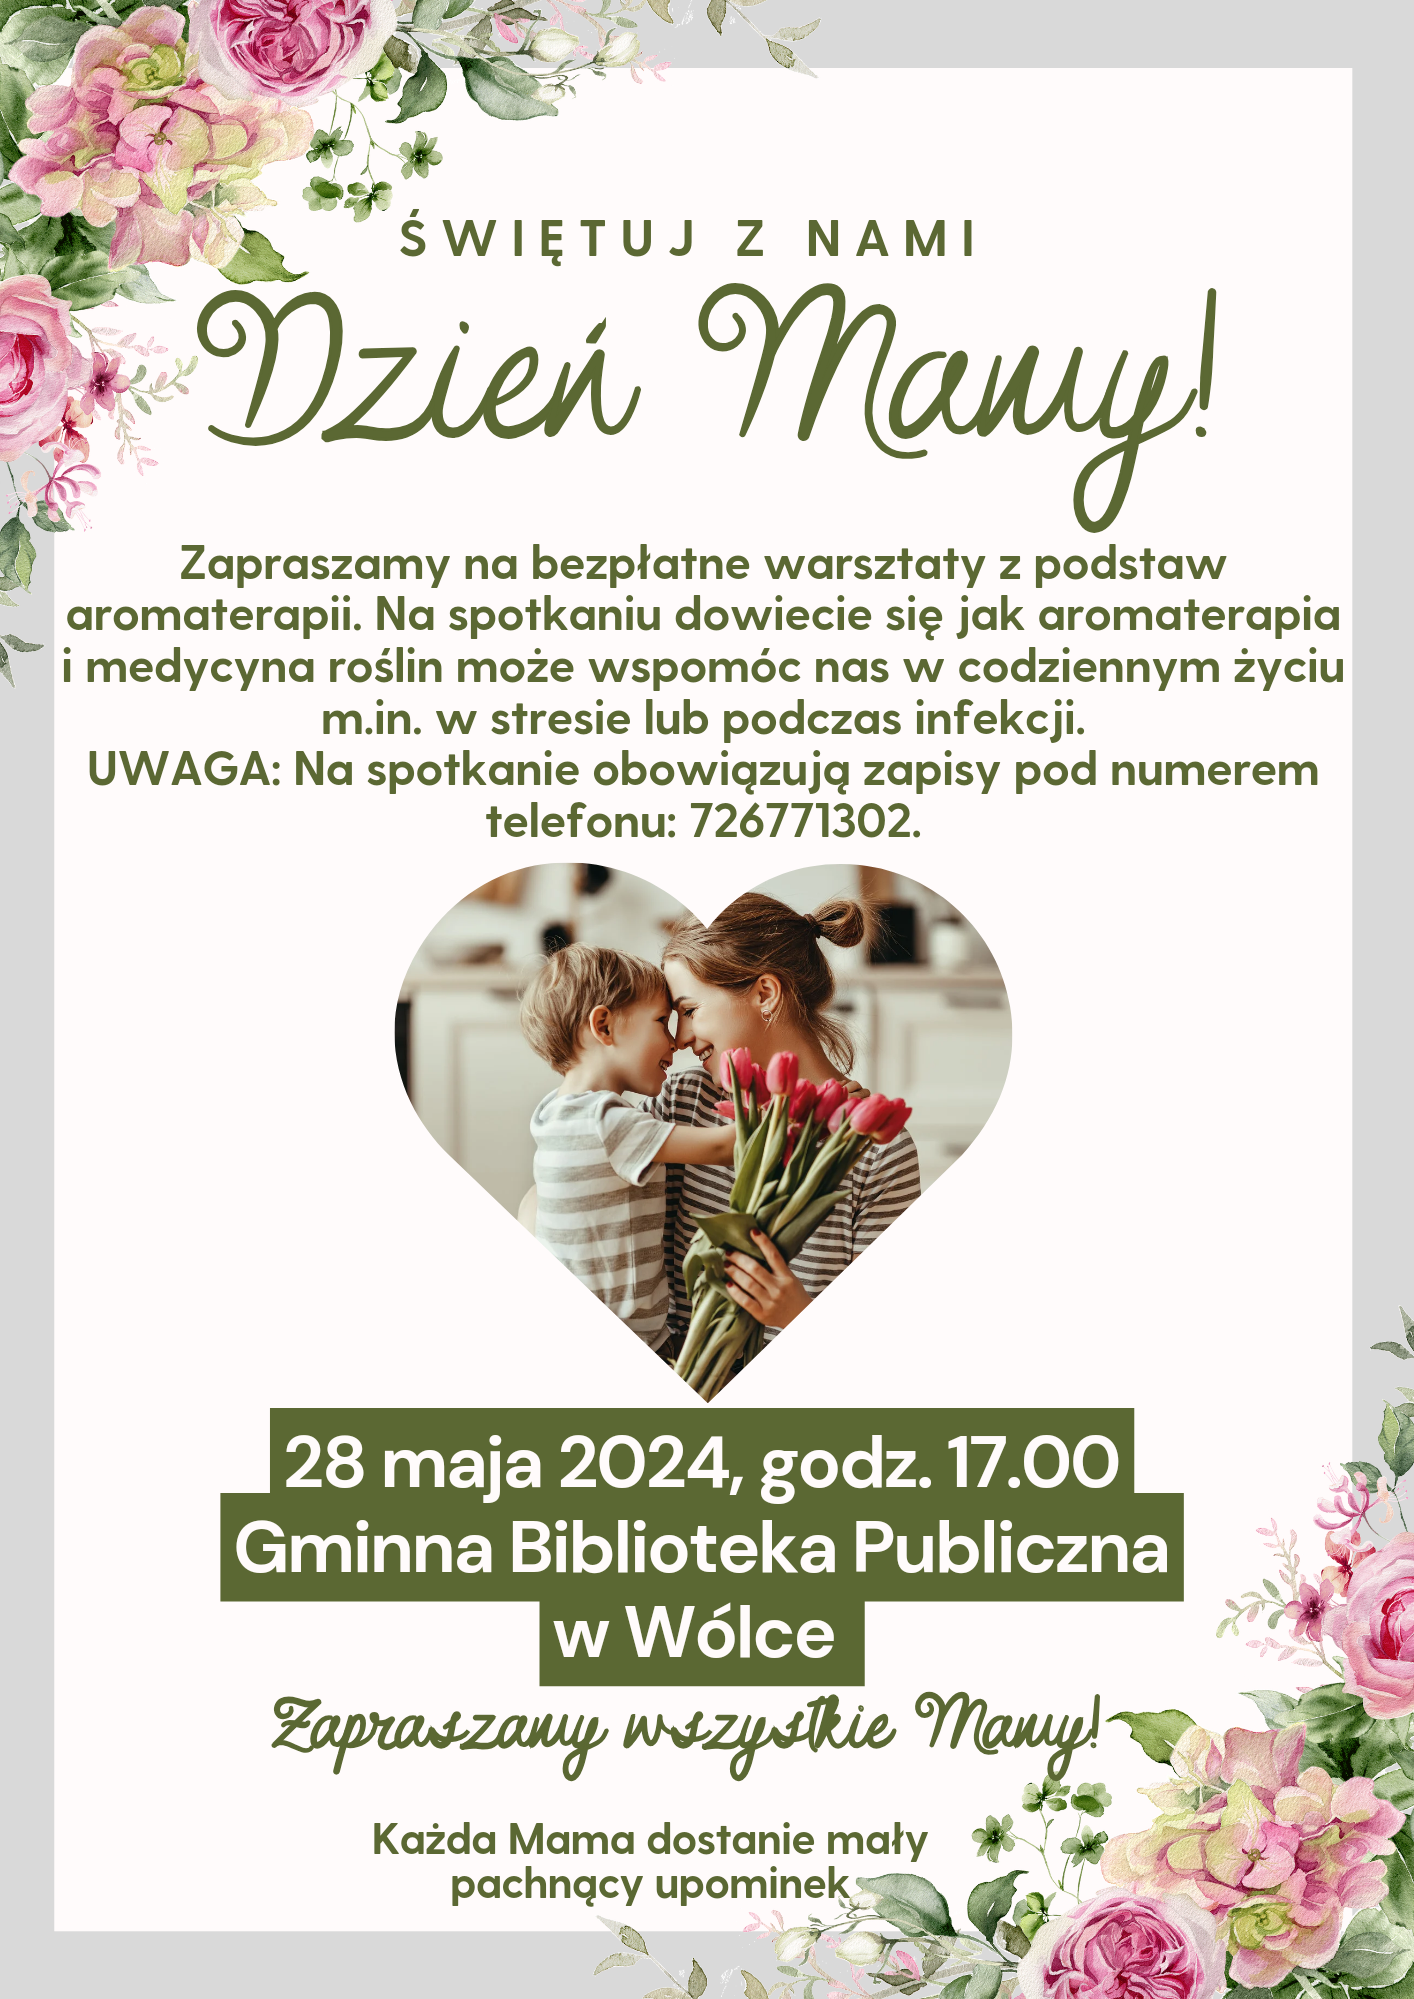 Plakat zapraszający na darmowe warsztaty z okazji Dnia Matki z kwiatowymi obramowaniami, zdjęciem pary tulących się i informacjami o wydarzeniu oraz kontakcie.